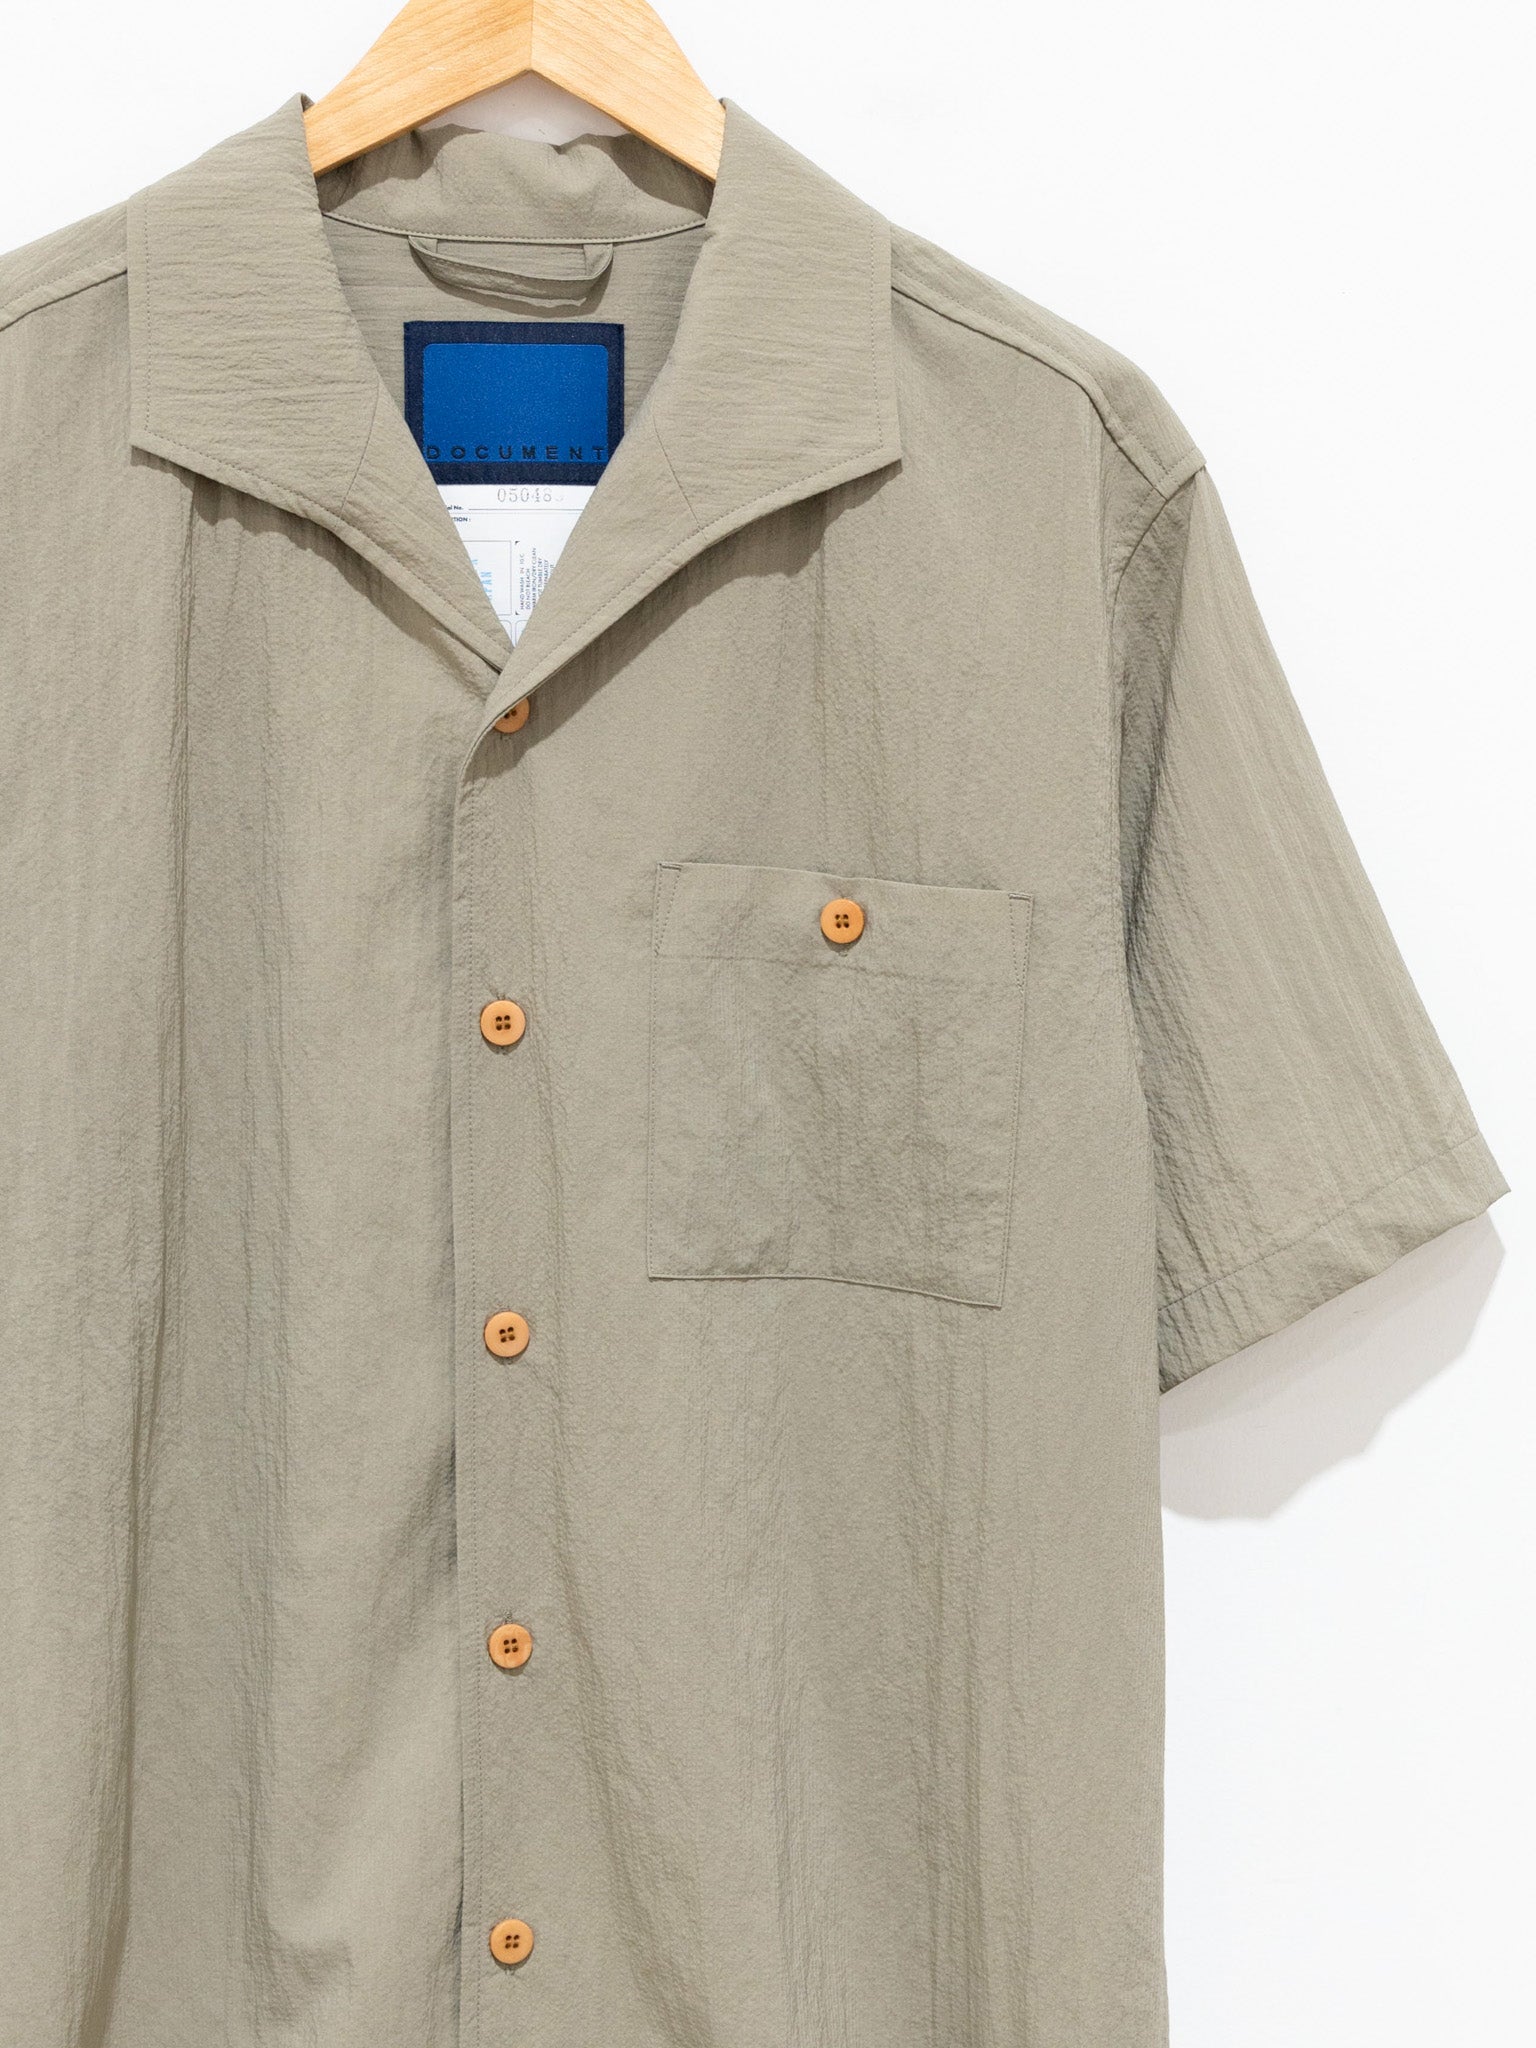 Namu Shop - Document Lightweight Summer Shirt - Beige